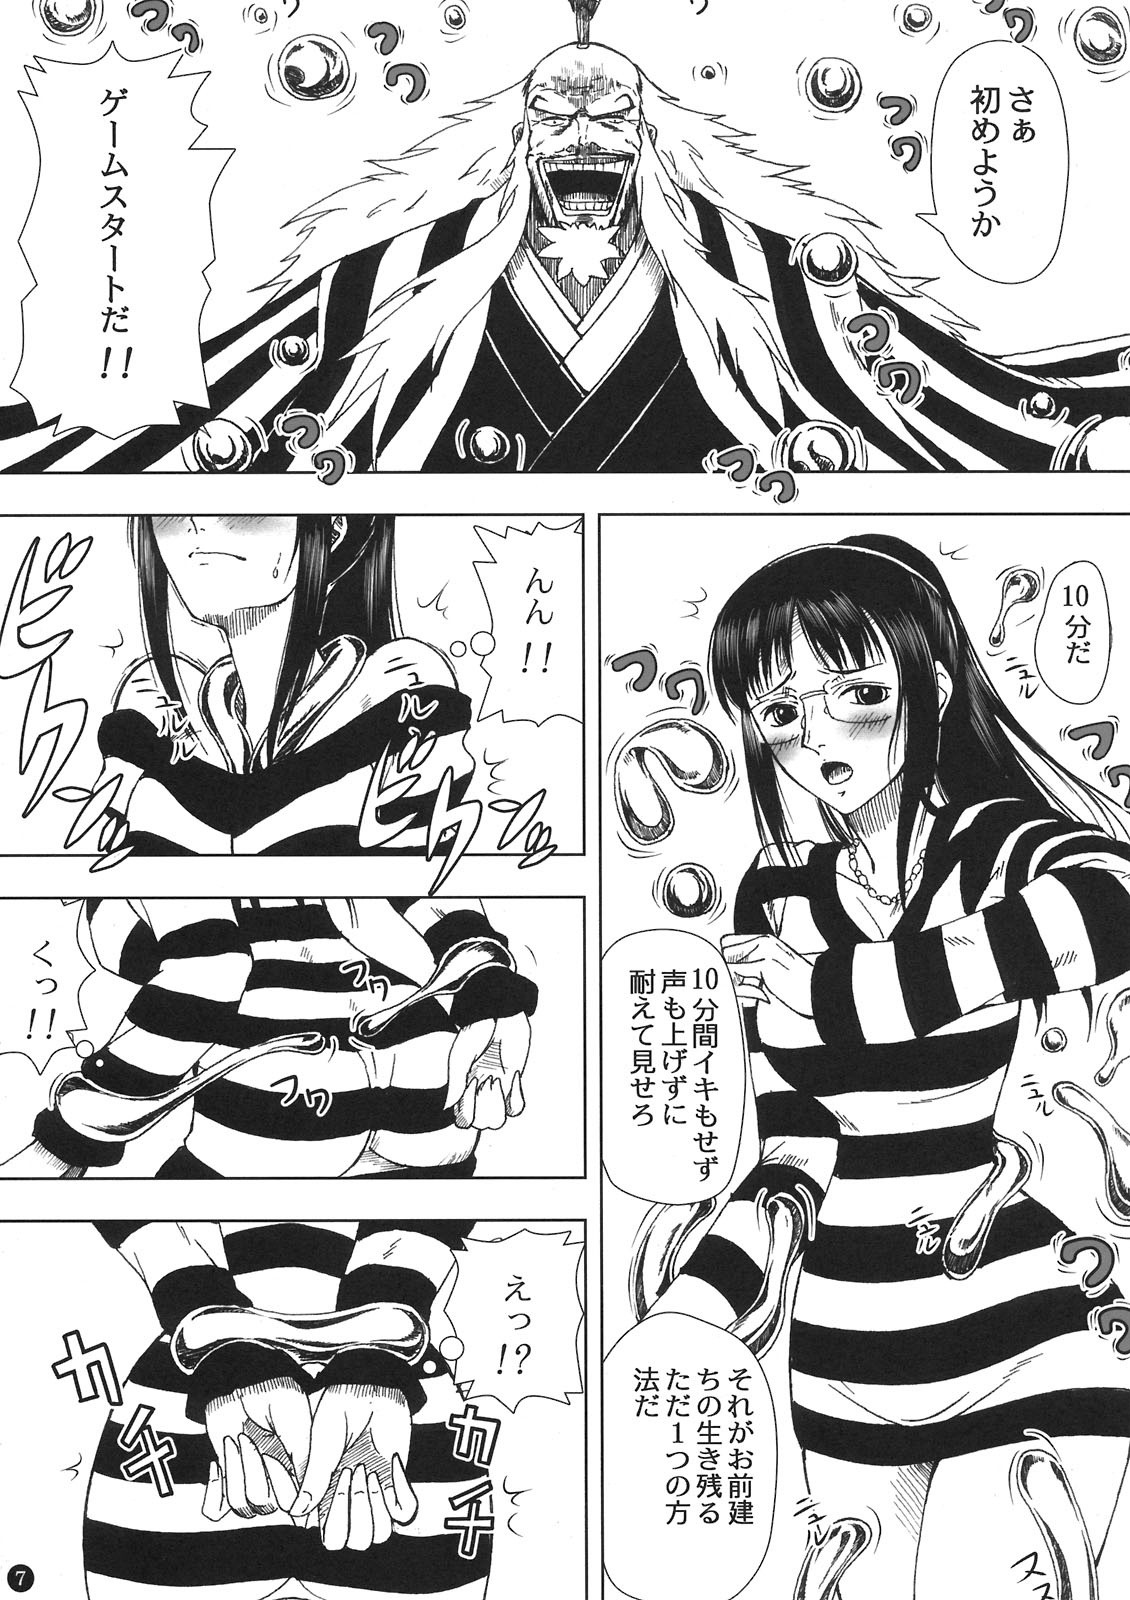 Akuma no Mi no Tsukaikata porn comic picture 7